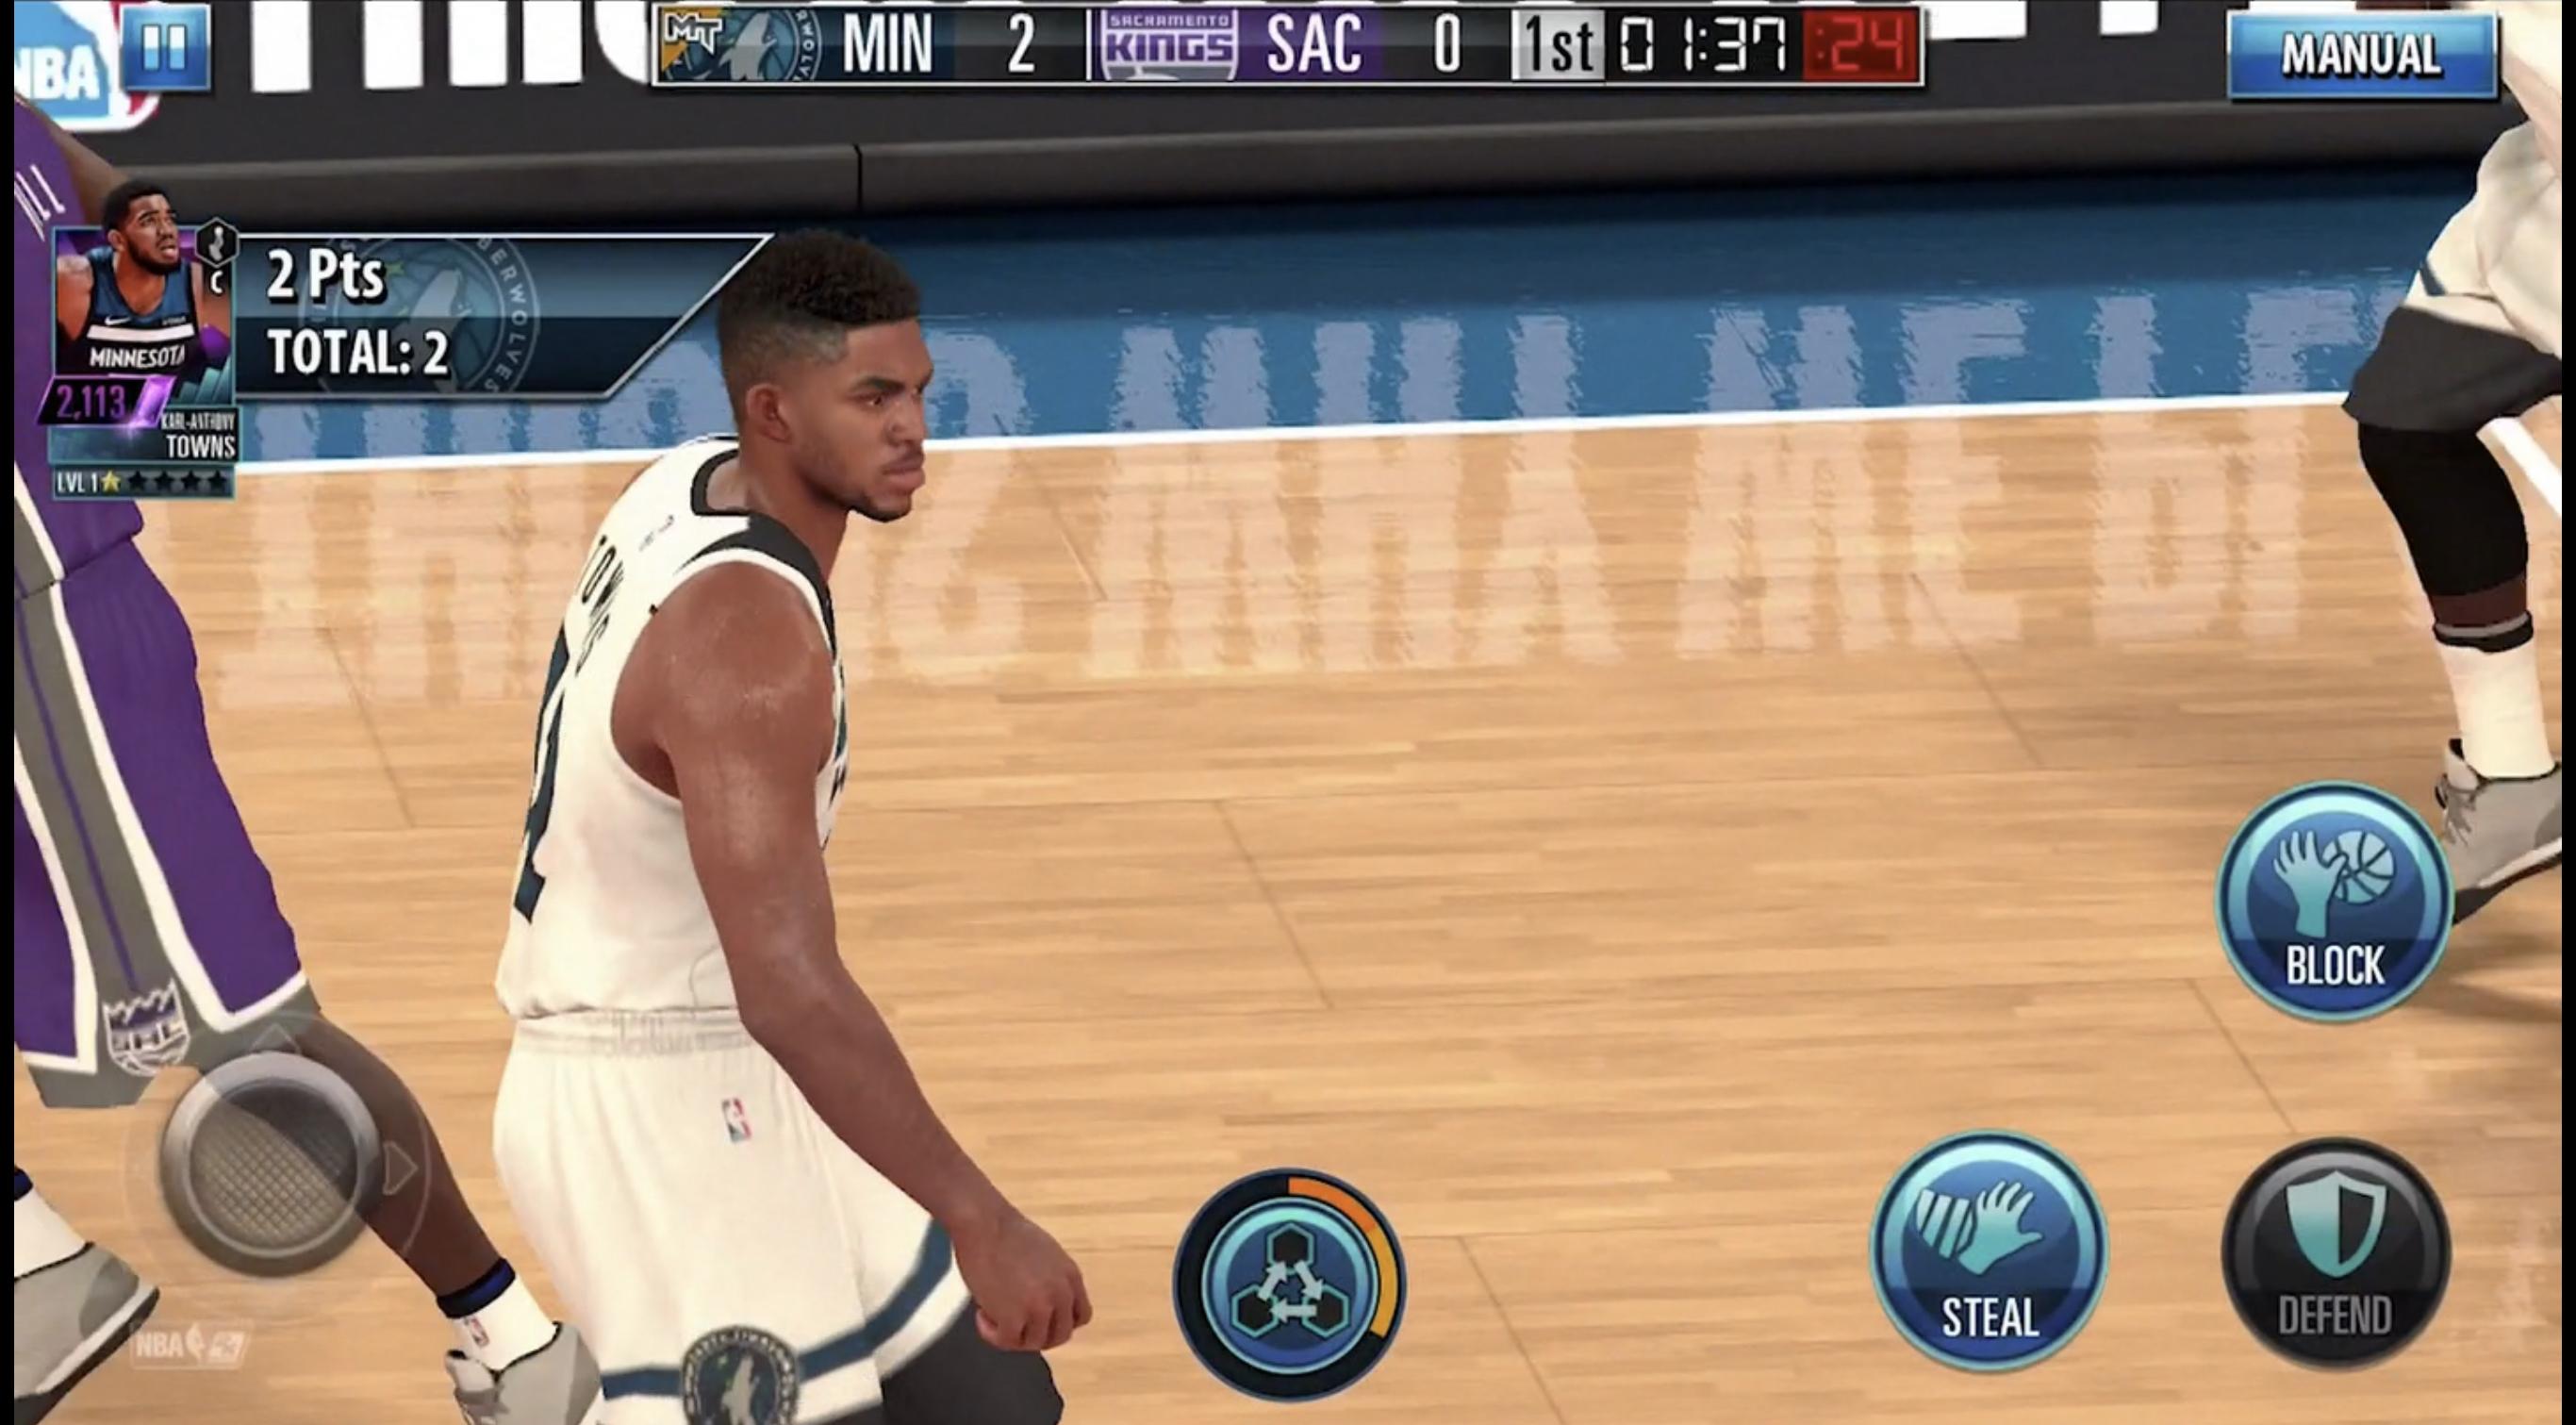 NBA 2K igra s konzolnom grafikom predstavljenom na Apple eventu je sada dostupna